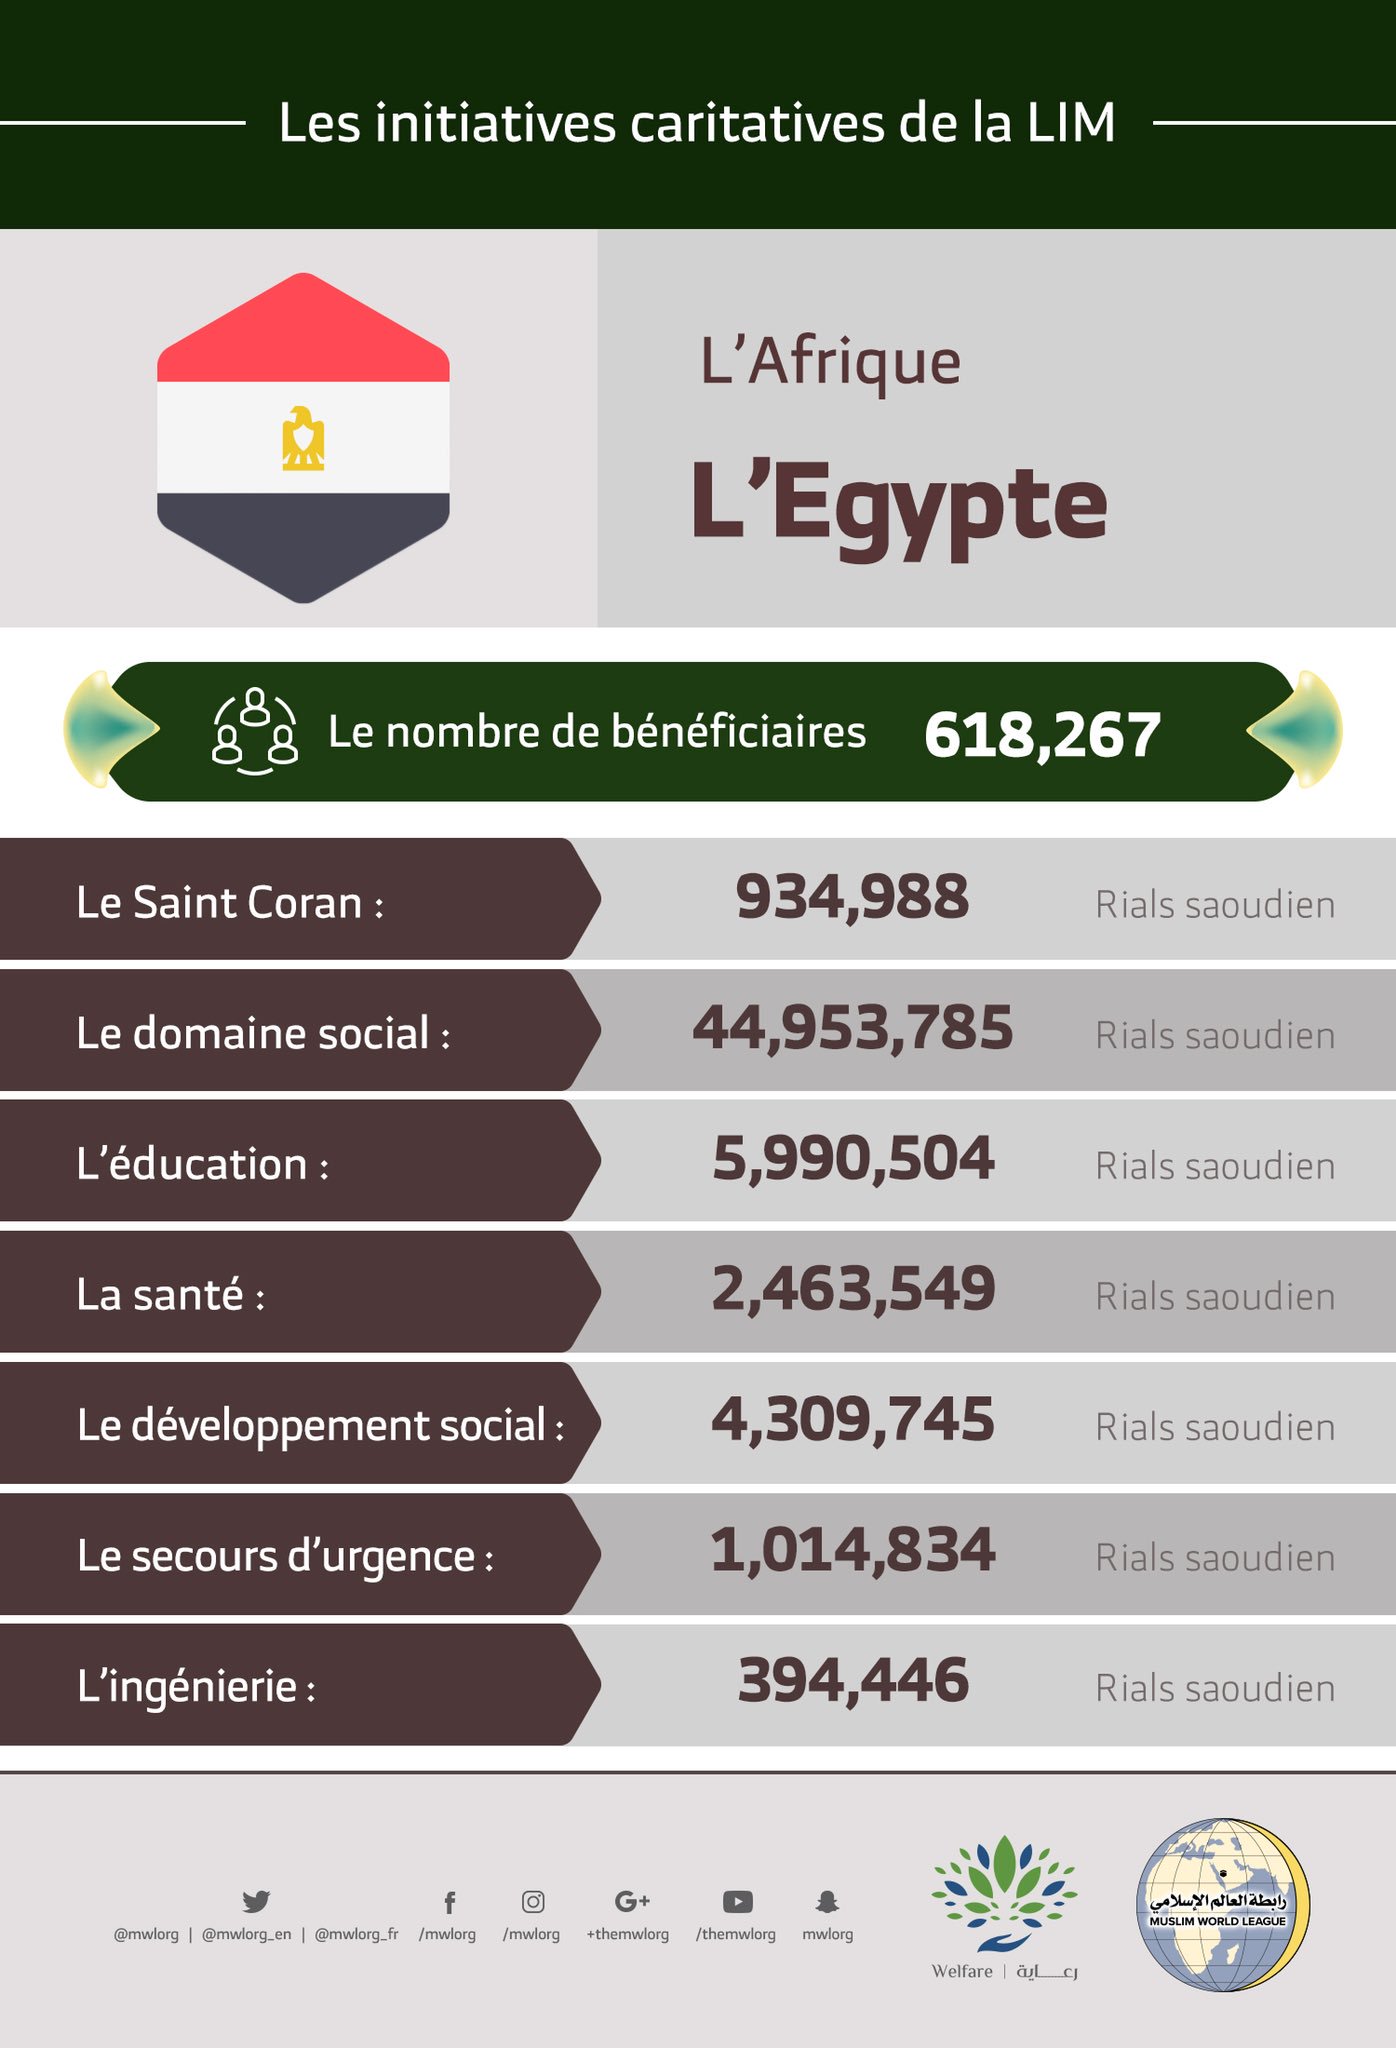 Le nombre total de bénéficiaires en Egypte des initiatives de la Ligue Islamique Mondiale s’élève à 618 267 personnes.